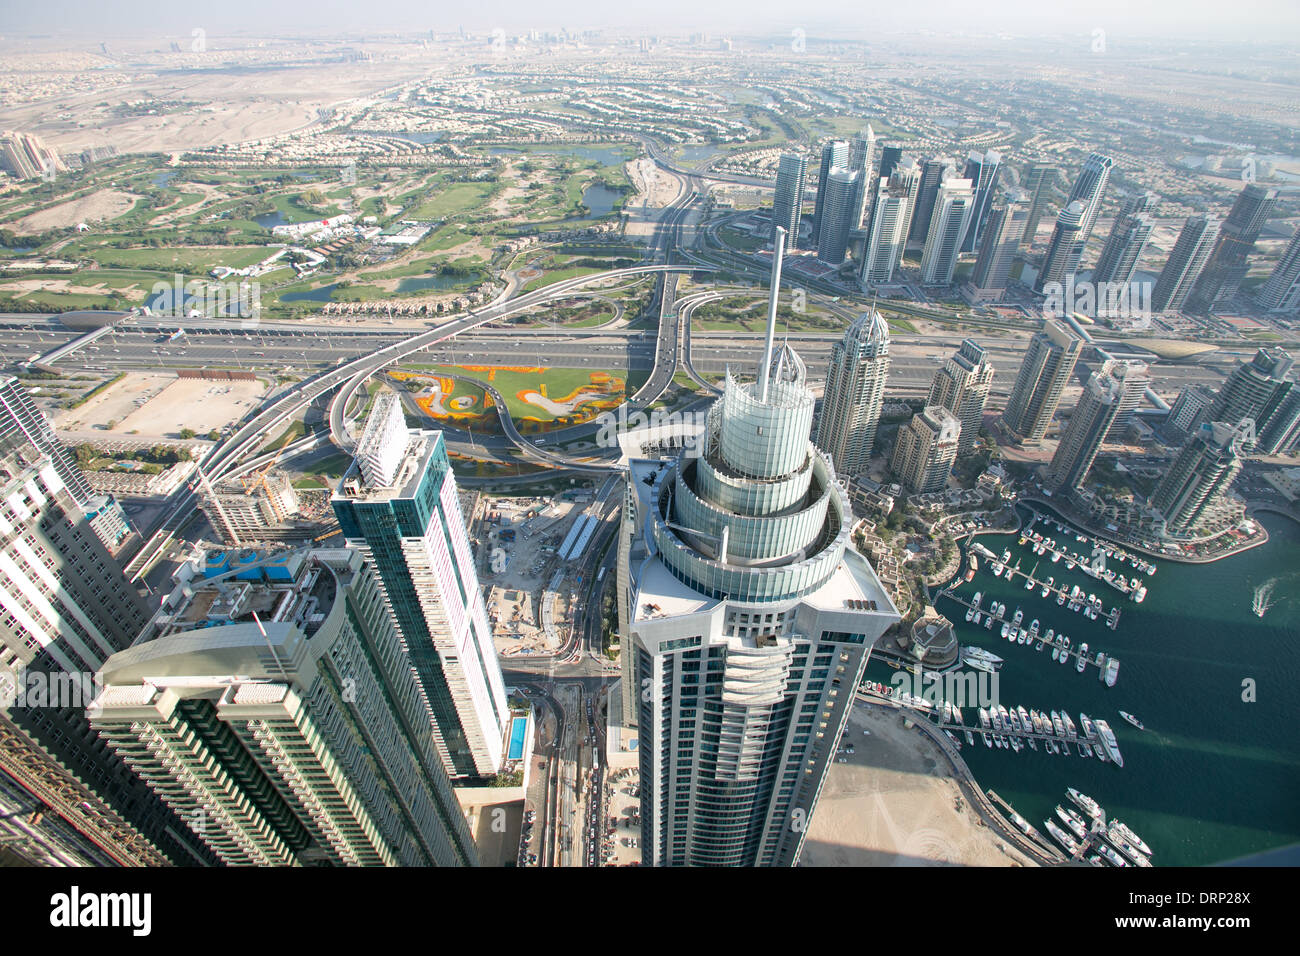 Aerial photo of Dubai in UAE Stock Photo